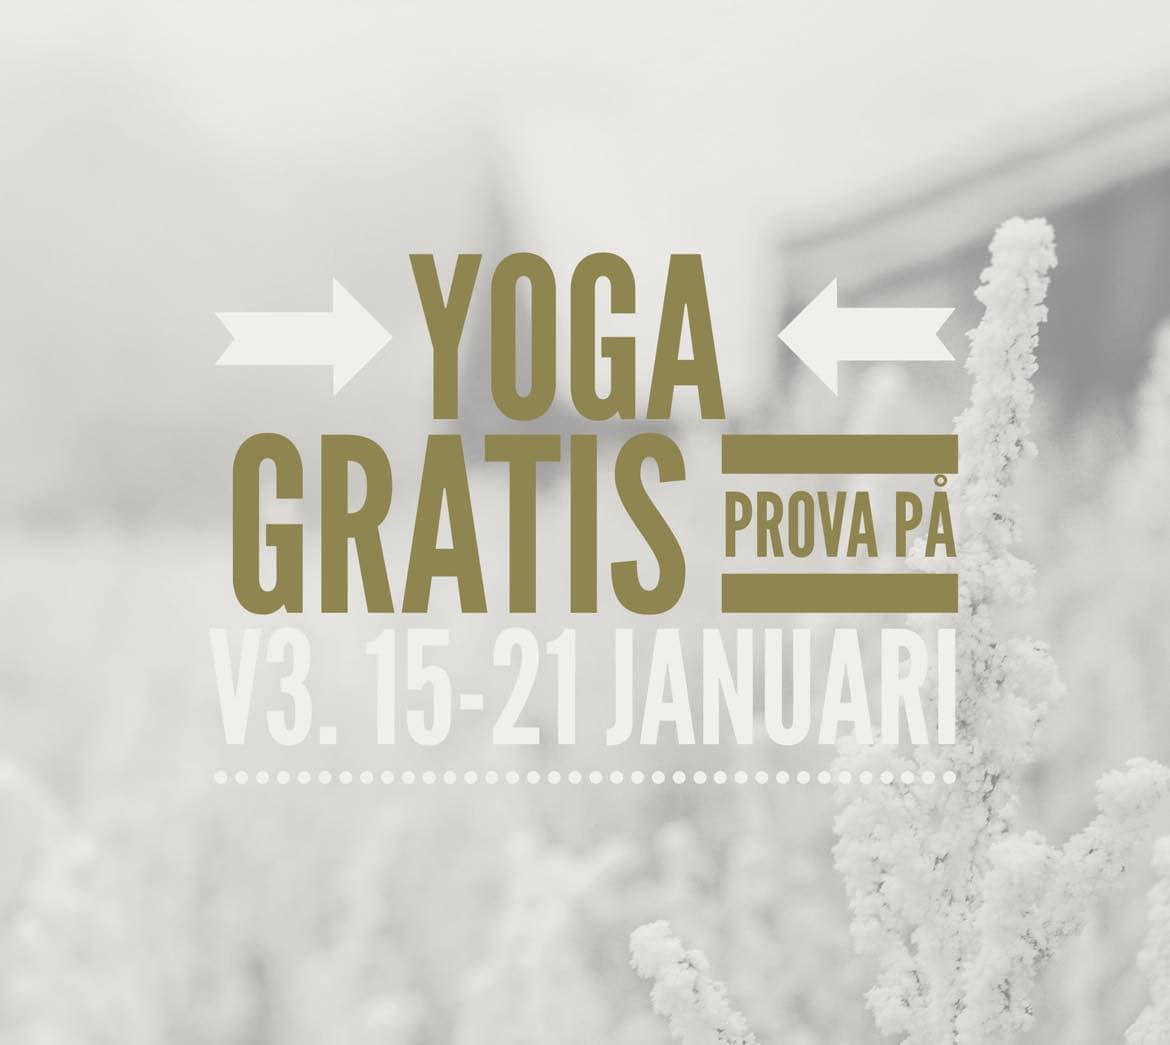 Gratis prova-på-yoga v.3: 15-21 januari Freemove Yogastudio